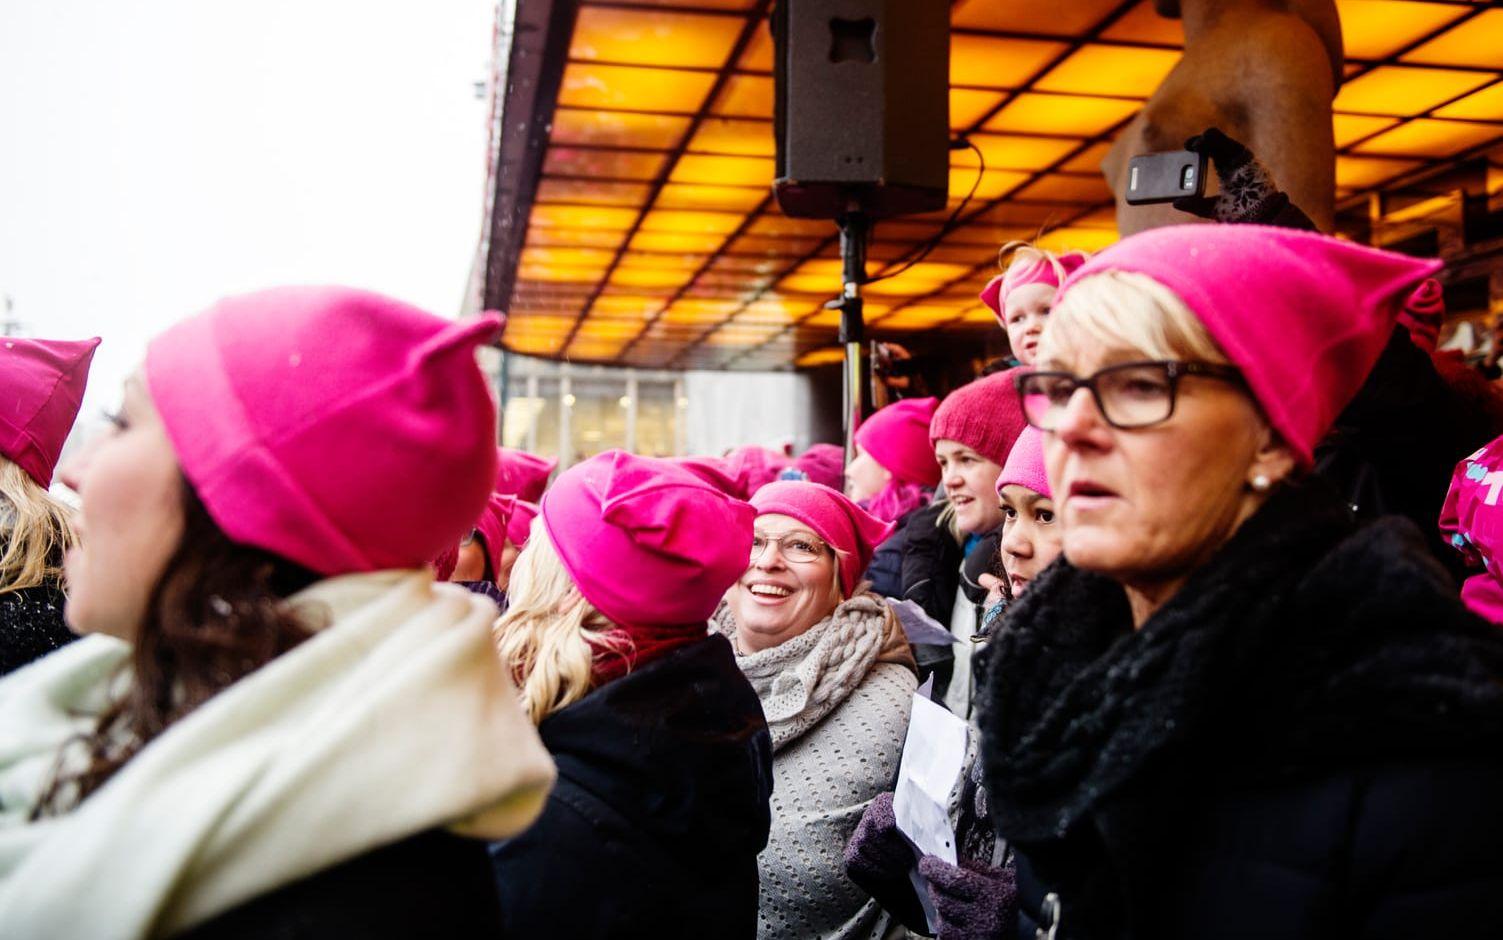 I Can't Keep Quiet och de rosa mössorna kommer från USA som en protest mot Donald Trumps politik. FOTO: Anna Svanberg